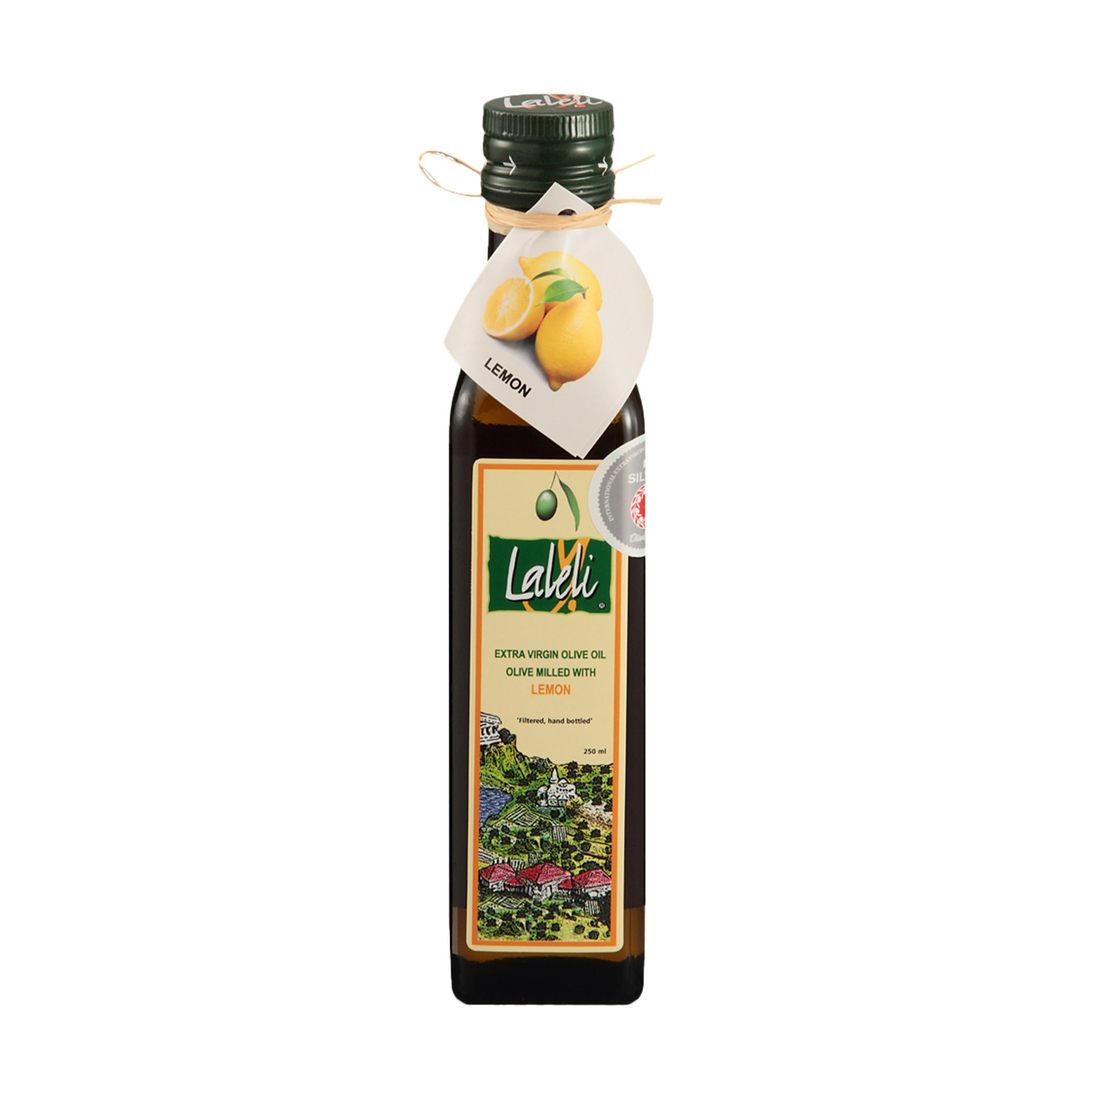 Laleli Extra Virgin Olive Oil Milled with Lemon 250ml | Laleli Limon Cesnili Zeytinyagi | Extra Virgin Olive Oil Milled with Lemon